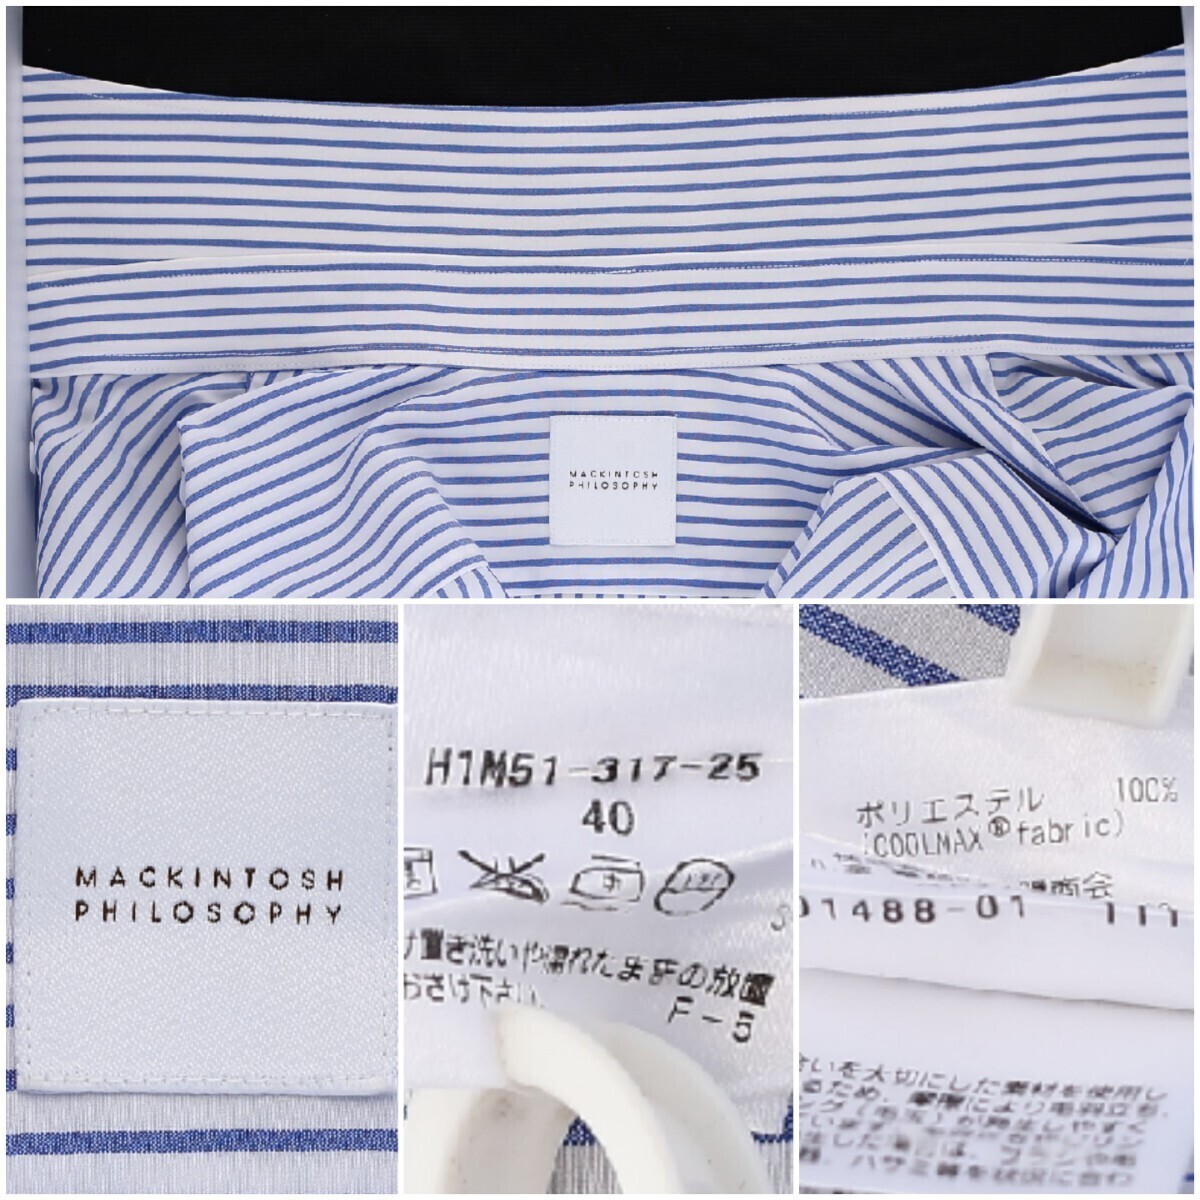 【美品】MACKINTOSH PHILOSOPHY 半袖シャツ size40 メンズL COOL MAX fabricストライプ柄の画像7